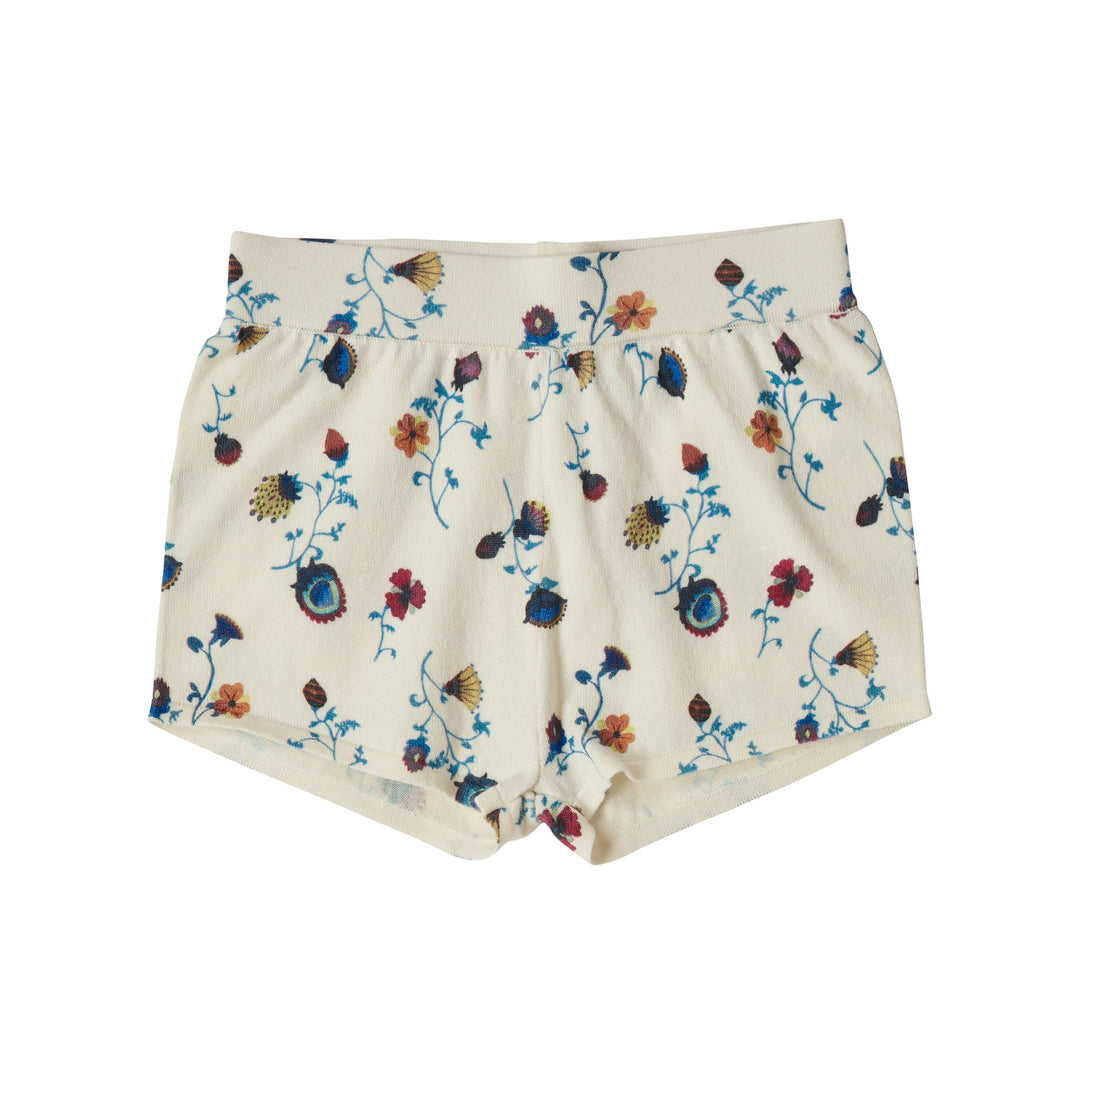 FUB Ecru/Flower Printed Beach Shorts